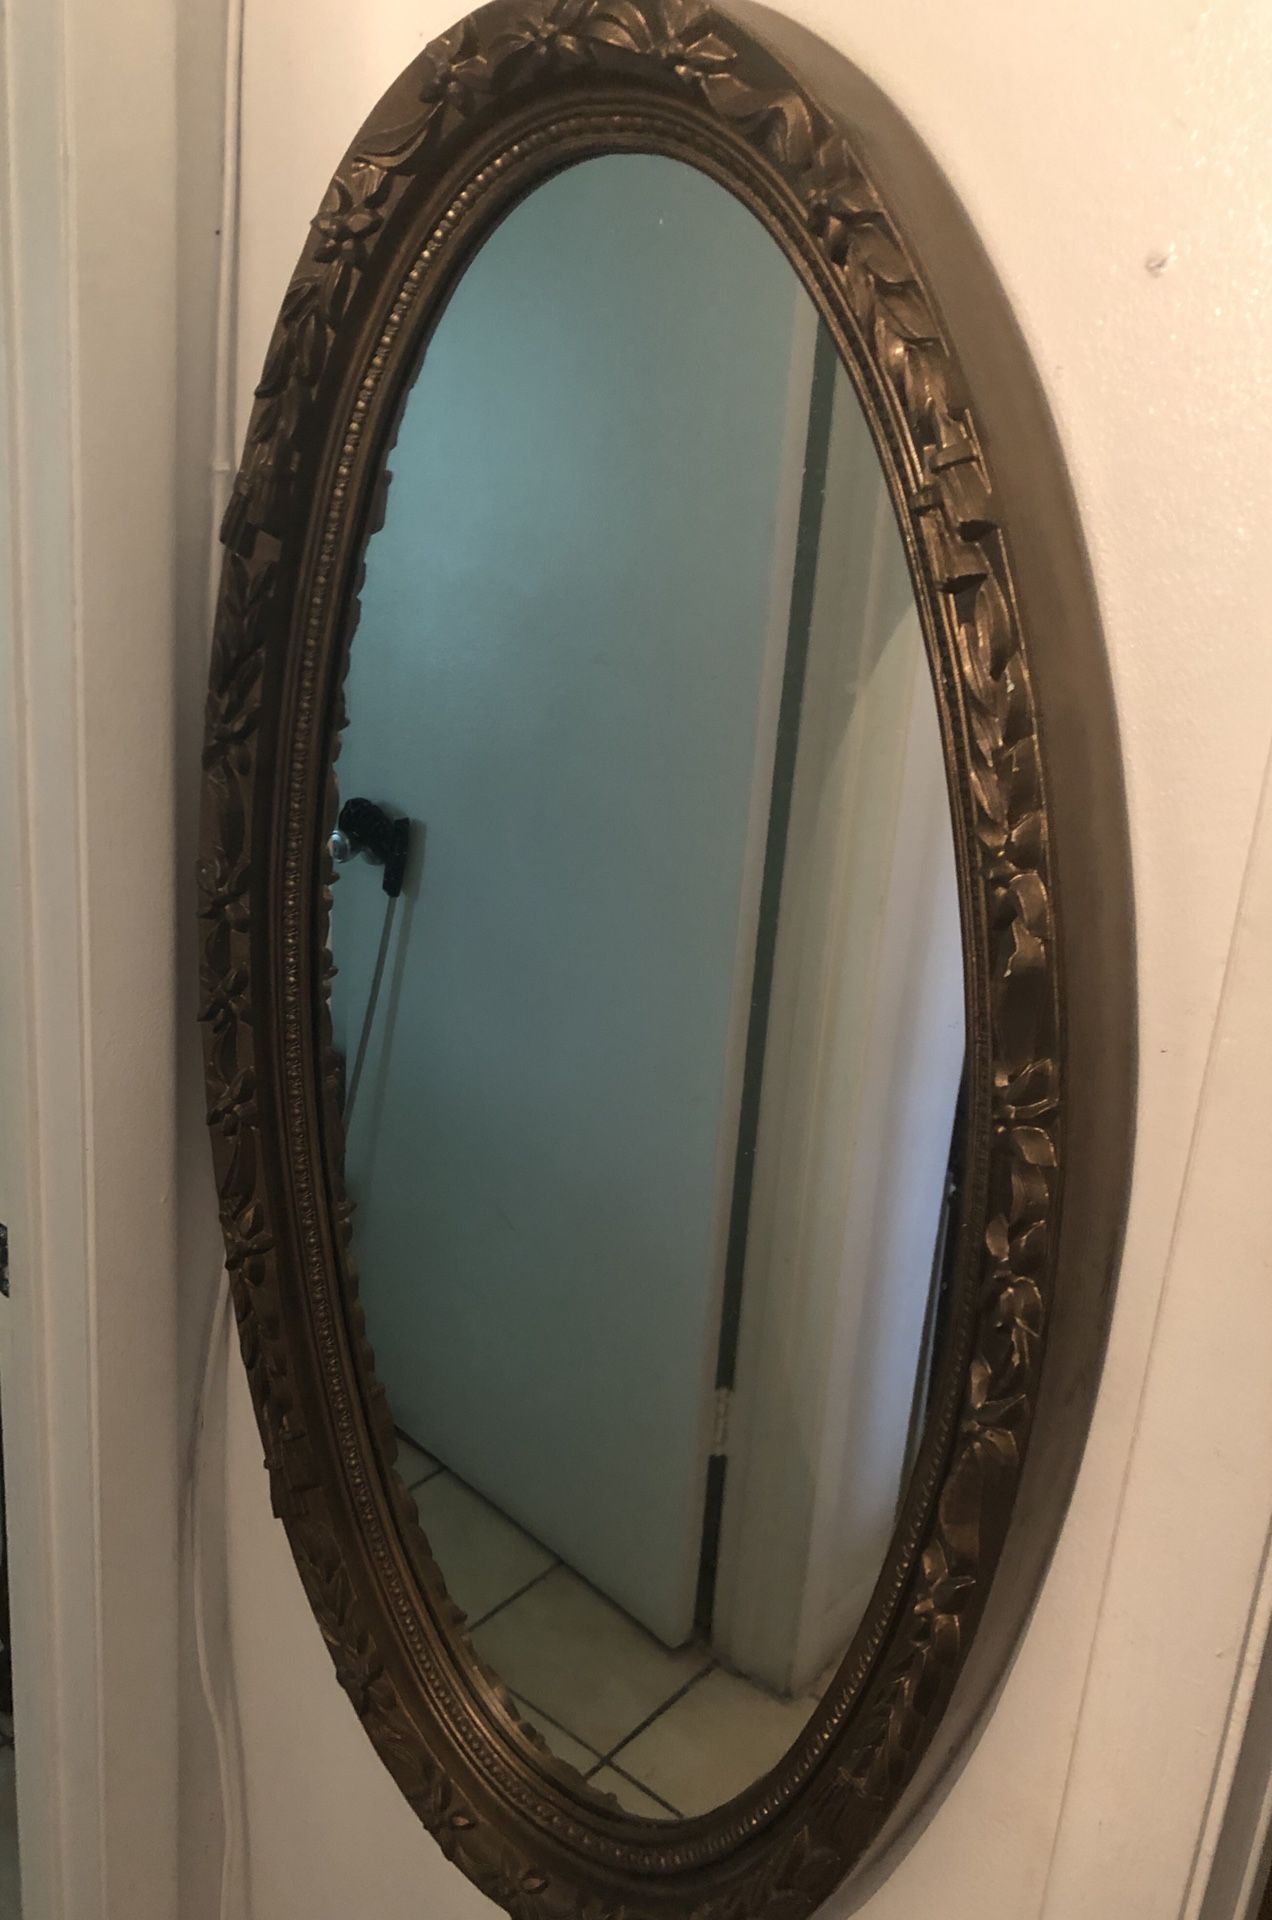 Espejo/ mirror antique